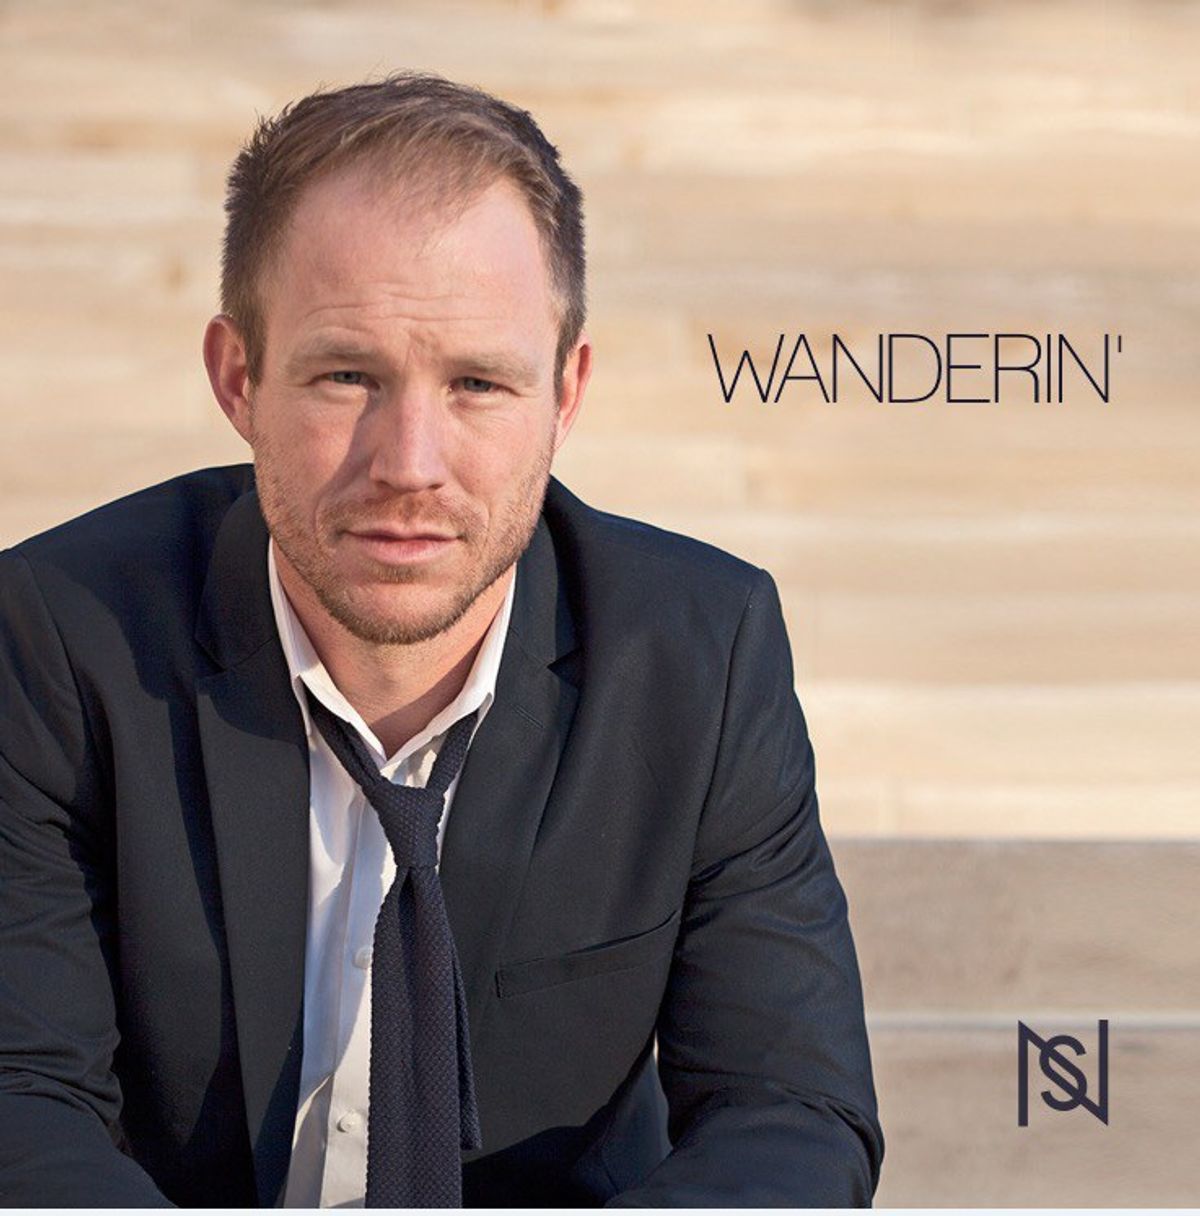 Nick Stoppel's Debut Album 'Wanderin'